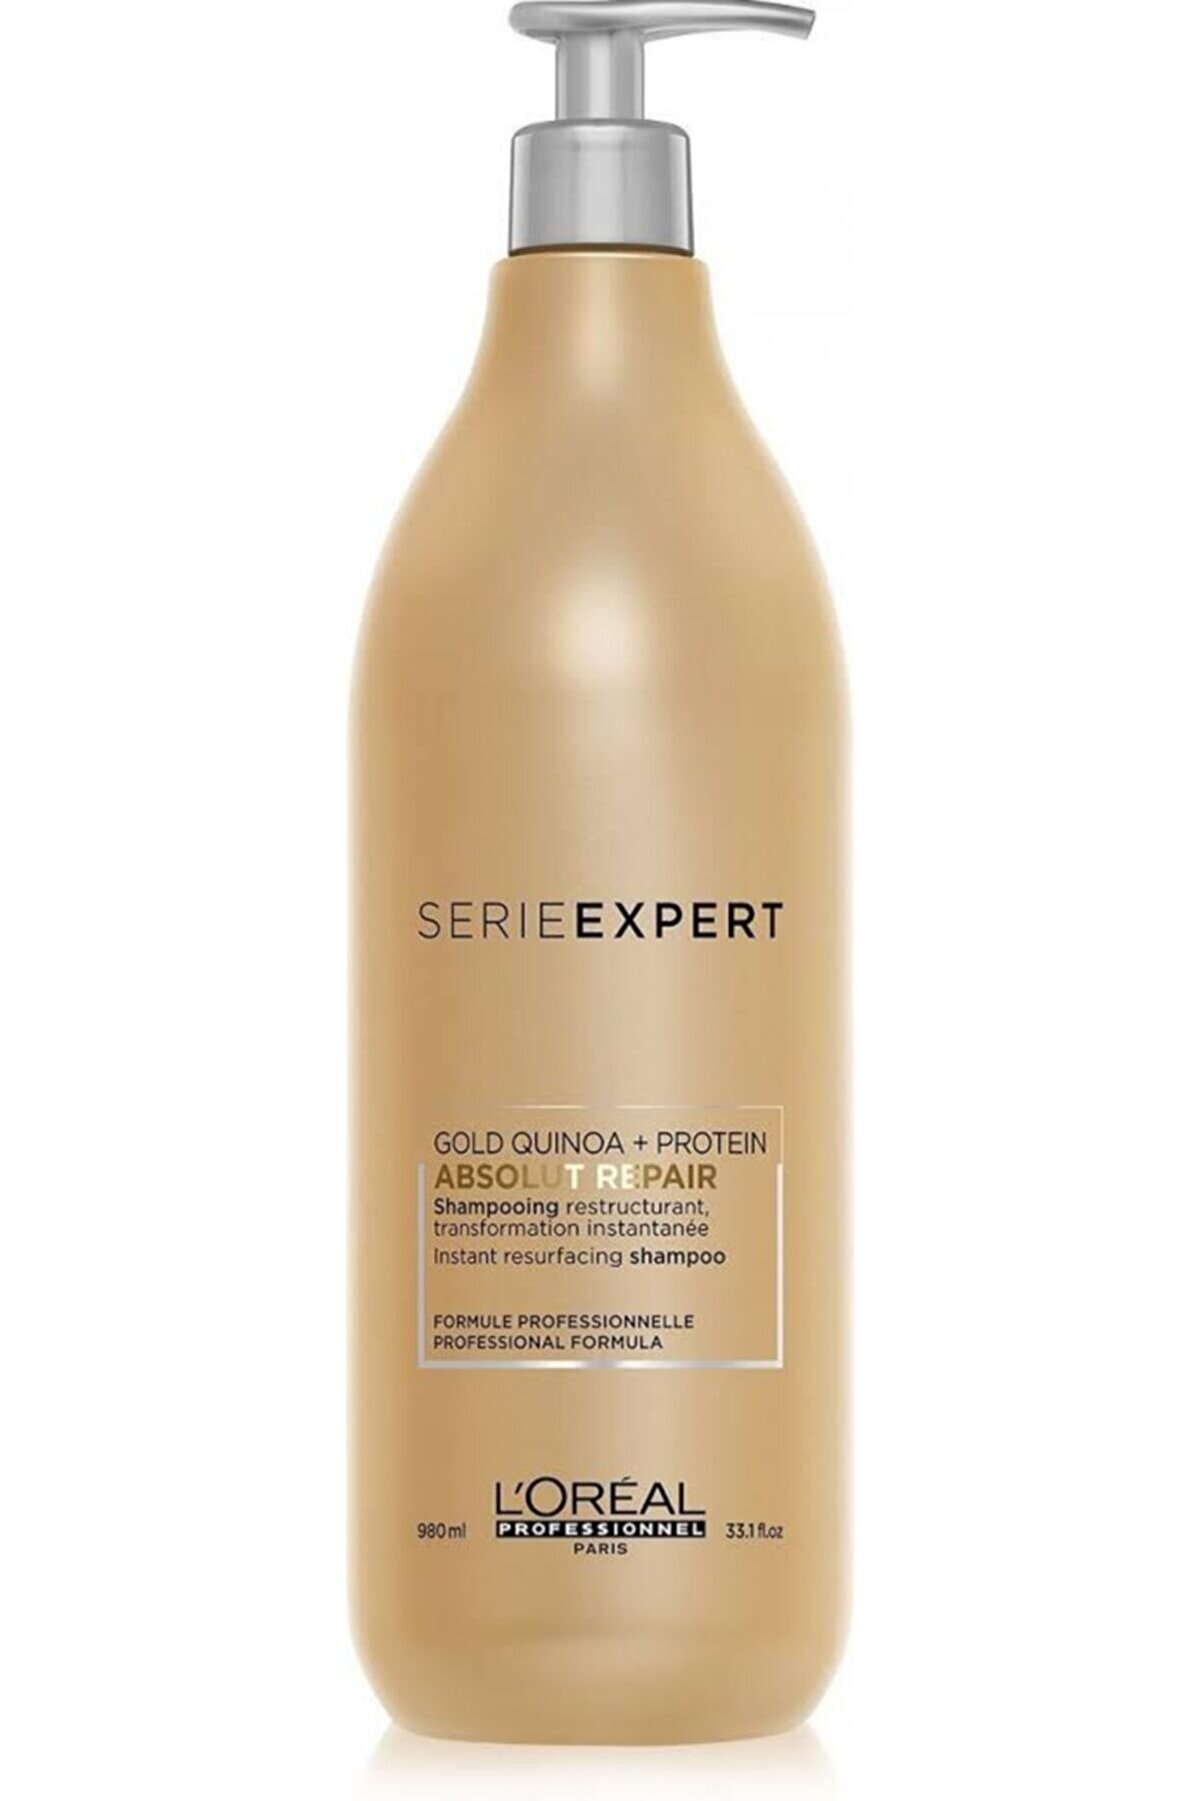 L'oreal Professionnel Aşırı Yıpranmış Saçlar Için Onarıcı Şampuan - Absolut Repair Gold Quinoa 980 Ml Özel Seri